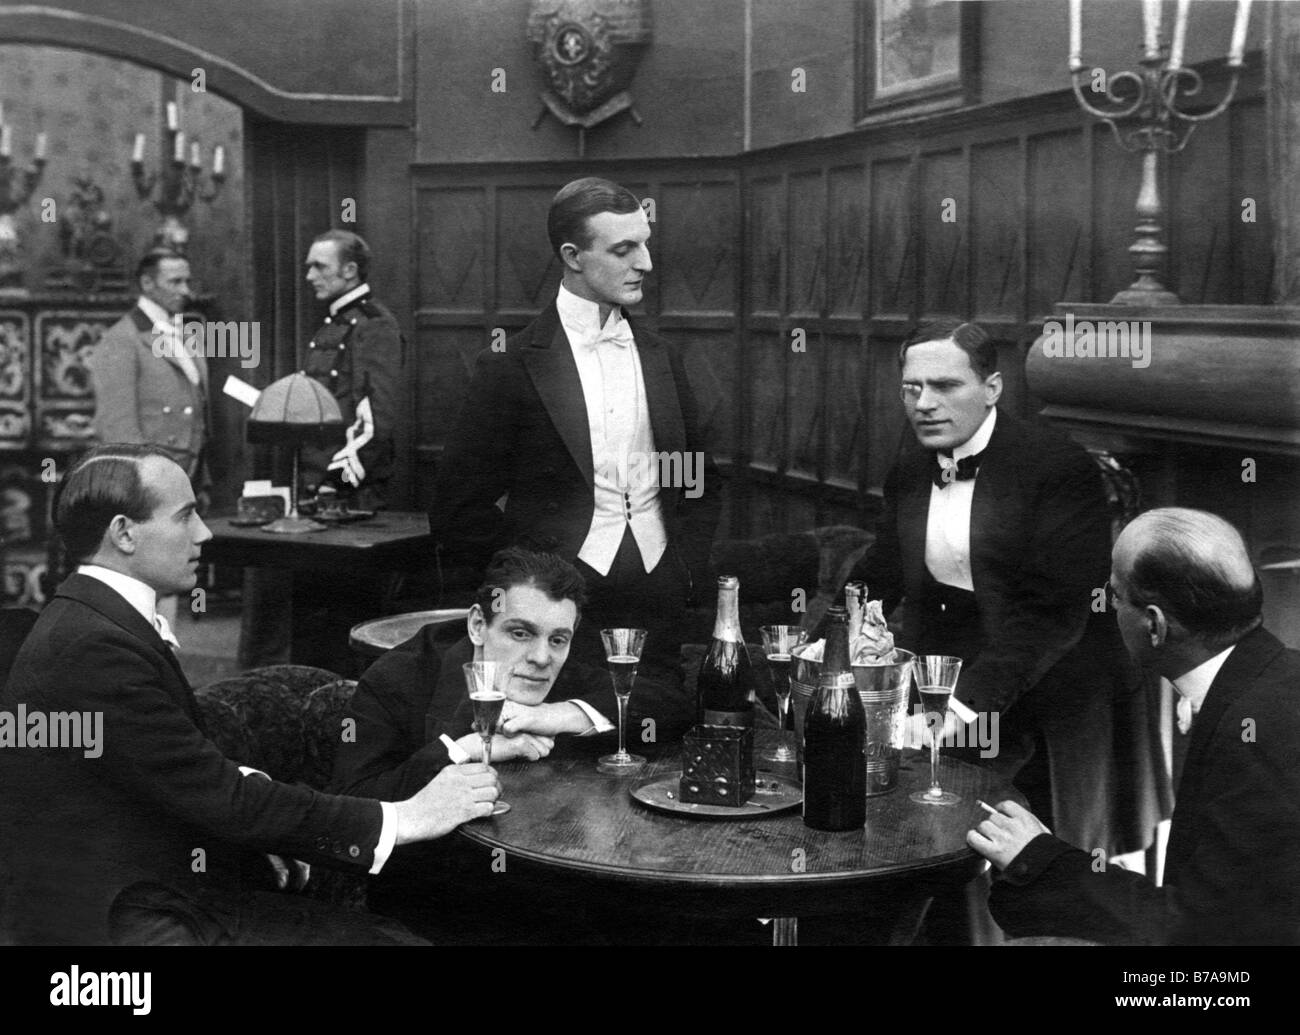 Historisches Foto, Herren des Abends in der Kneipe, ca. 1920 Stockfoto